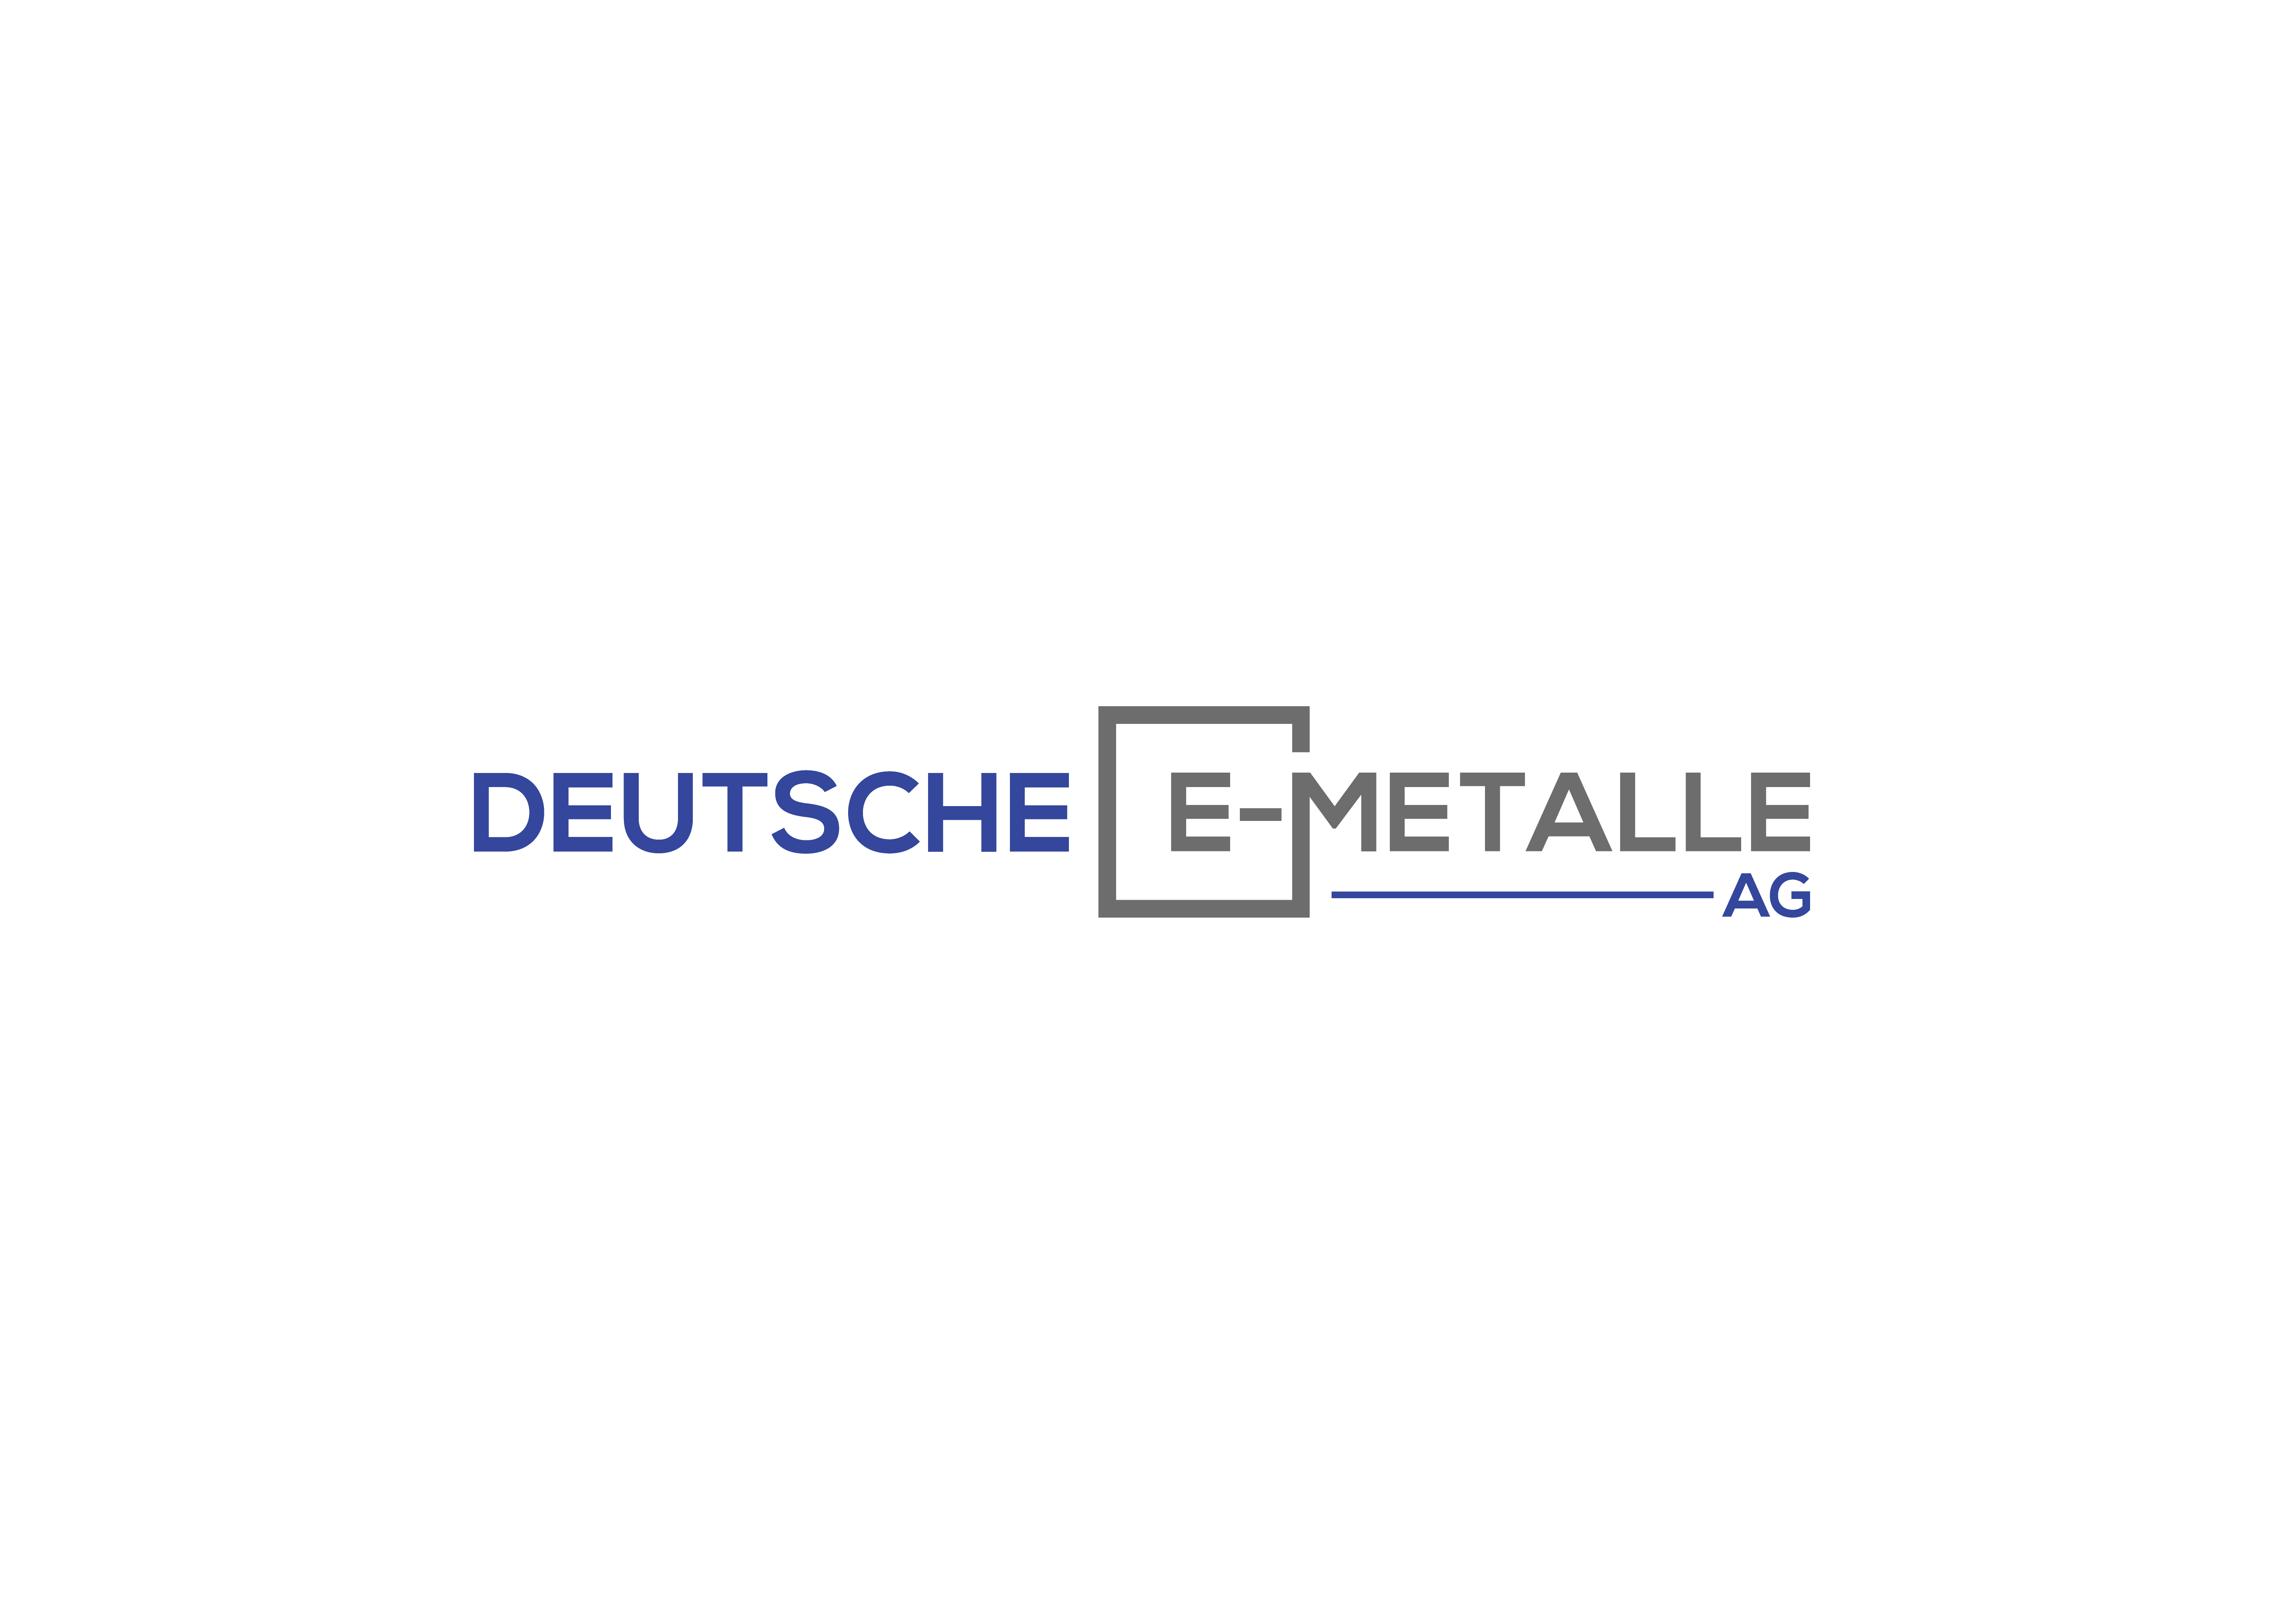 Deutsche E Metalle AG